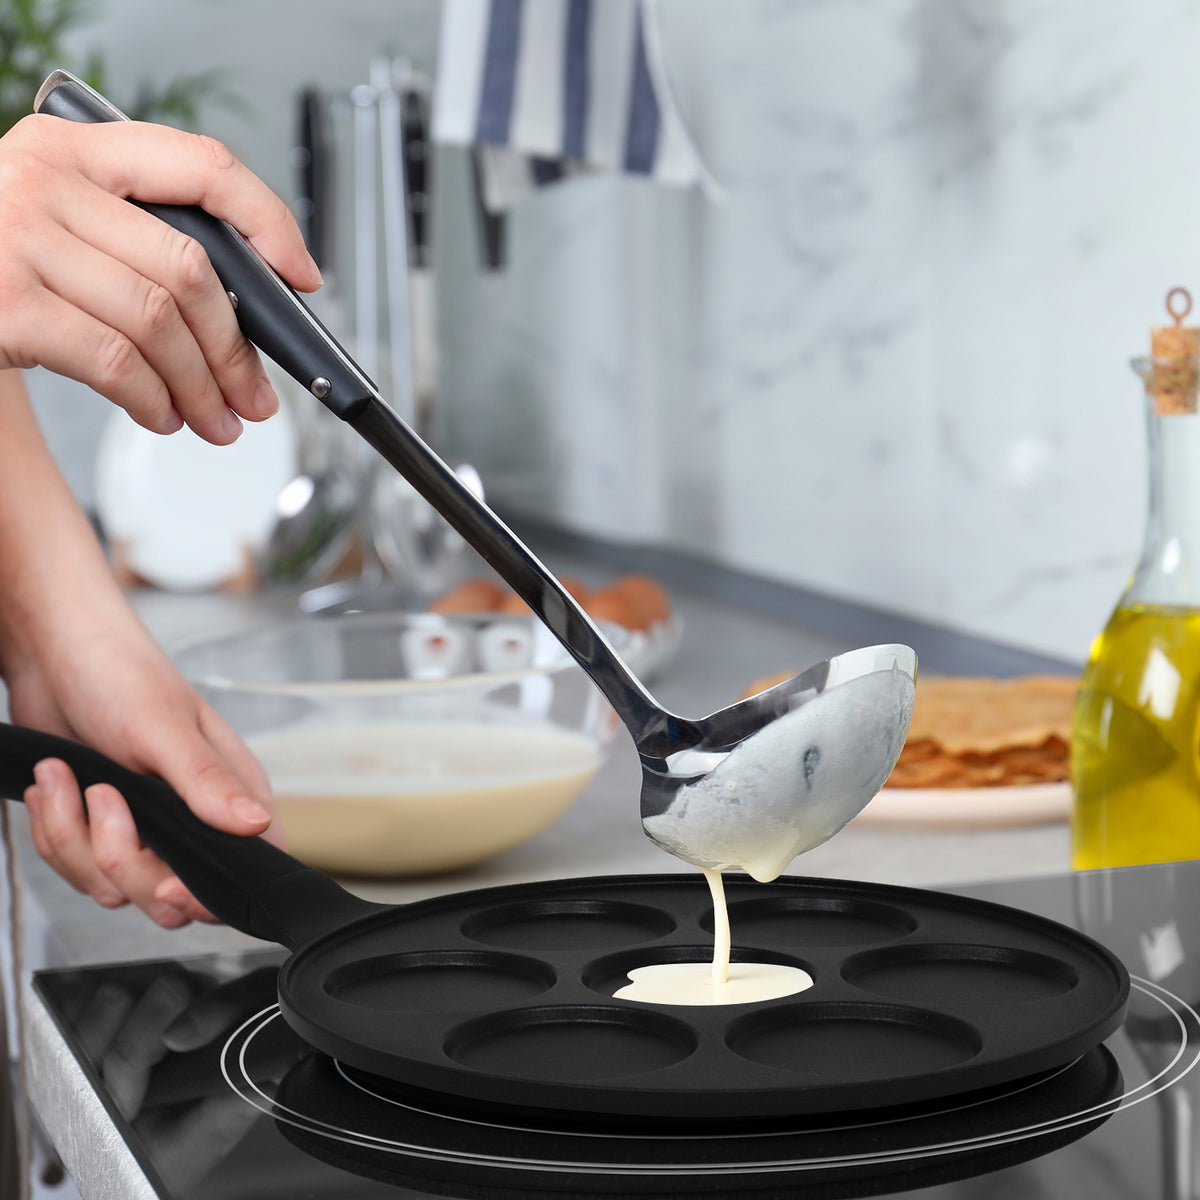 Joejis Poêle à Crêpe Pancakes Blinis - 4 Trous en Aluminium Antiadhésif -  Poele a Crepe induction ou